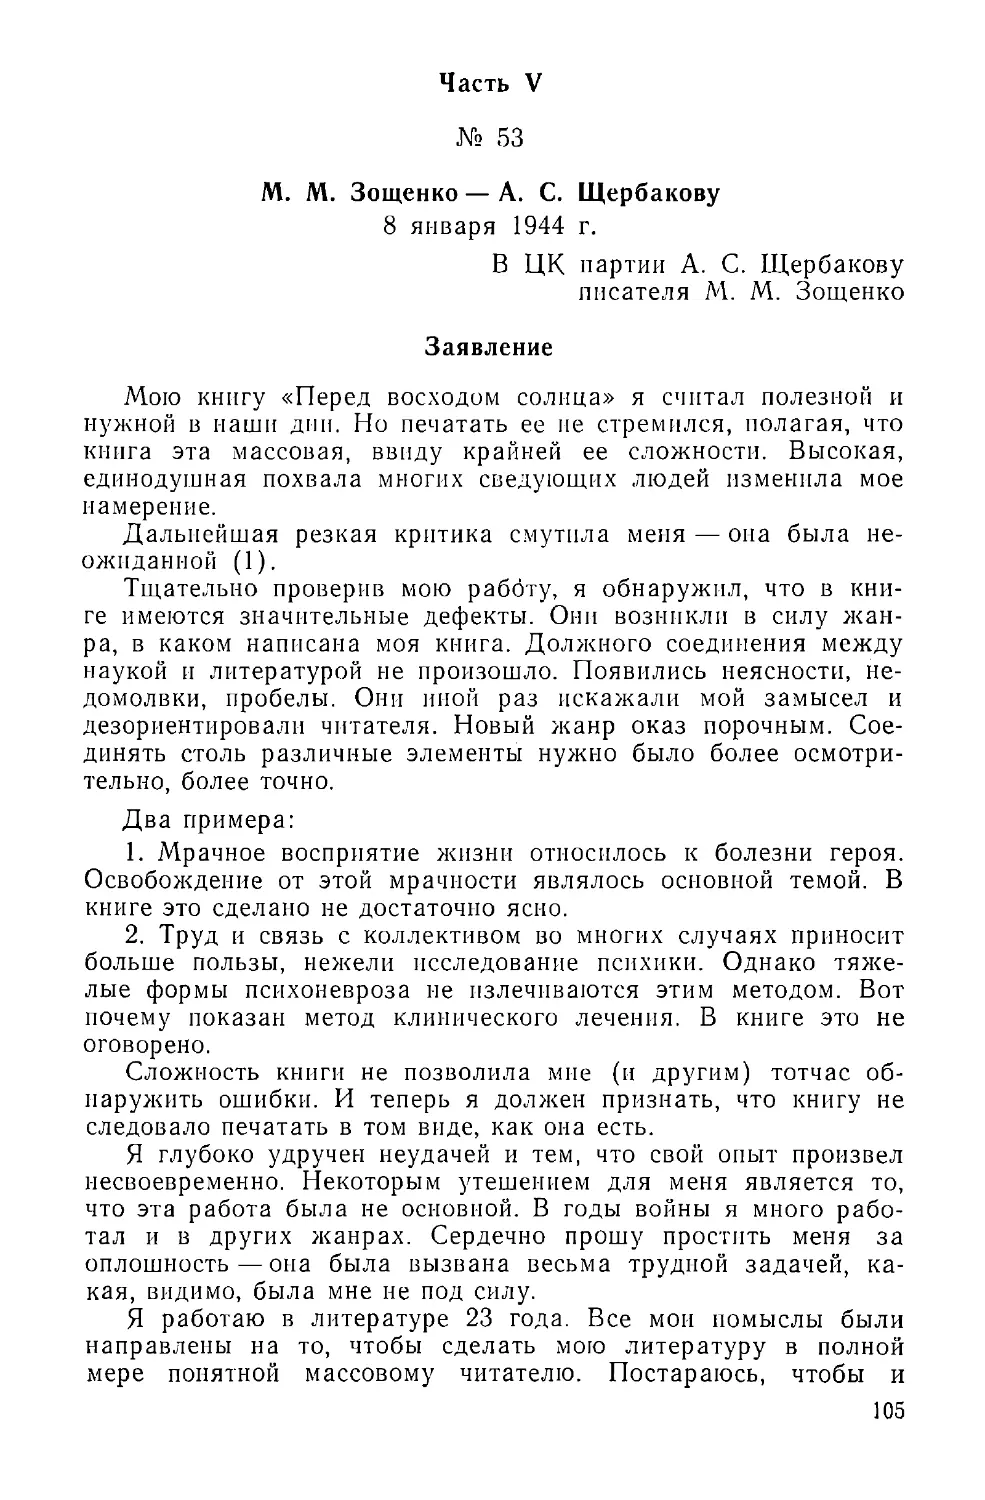 Часть V
М. М. Зощенко — А. С. Щербакову
Заявление